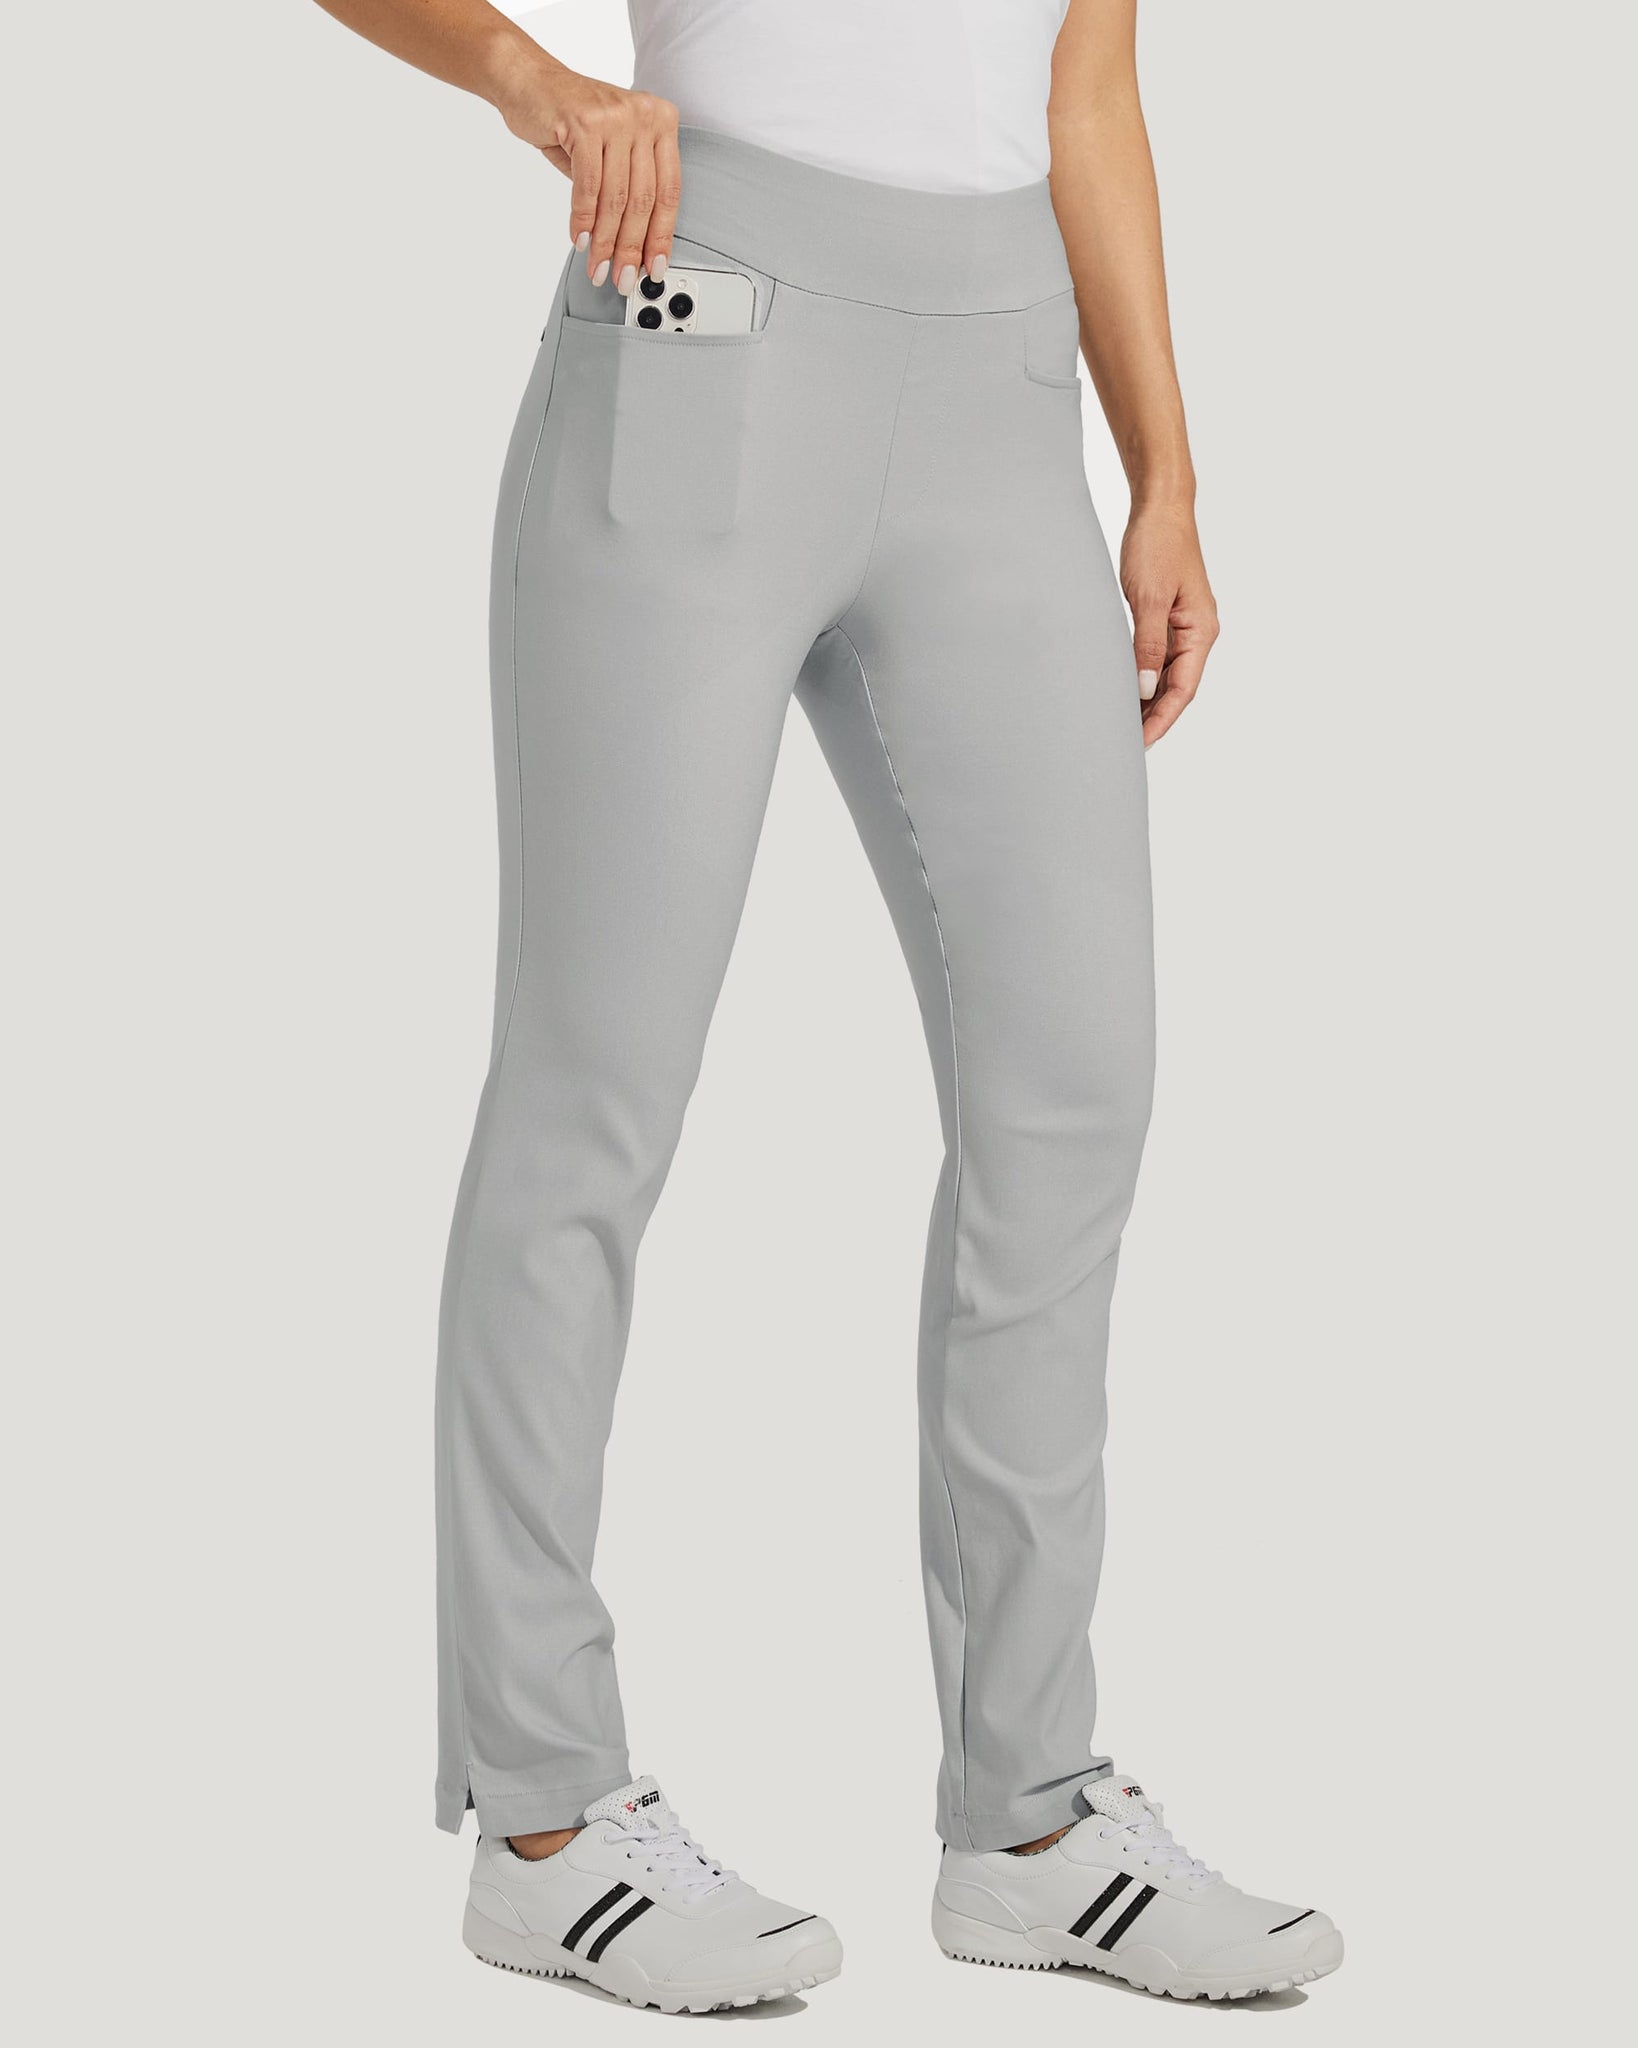 Women's Golf Pull-On Pants_LightGray_model1